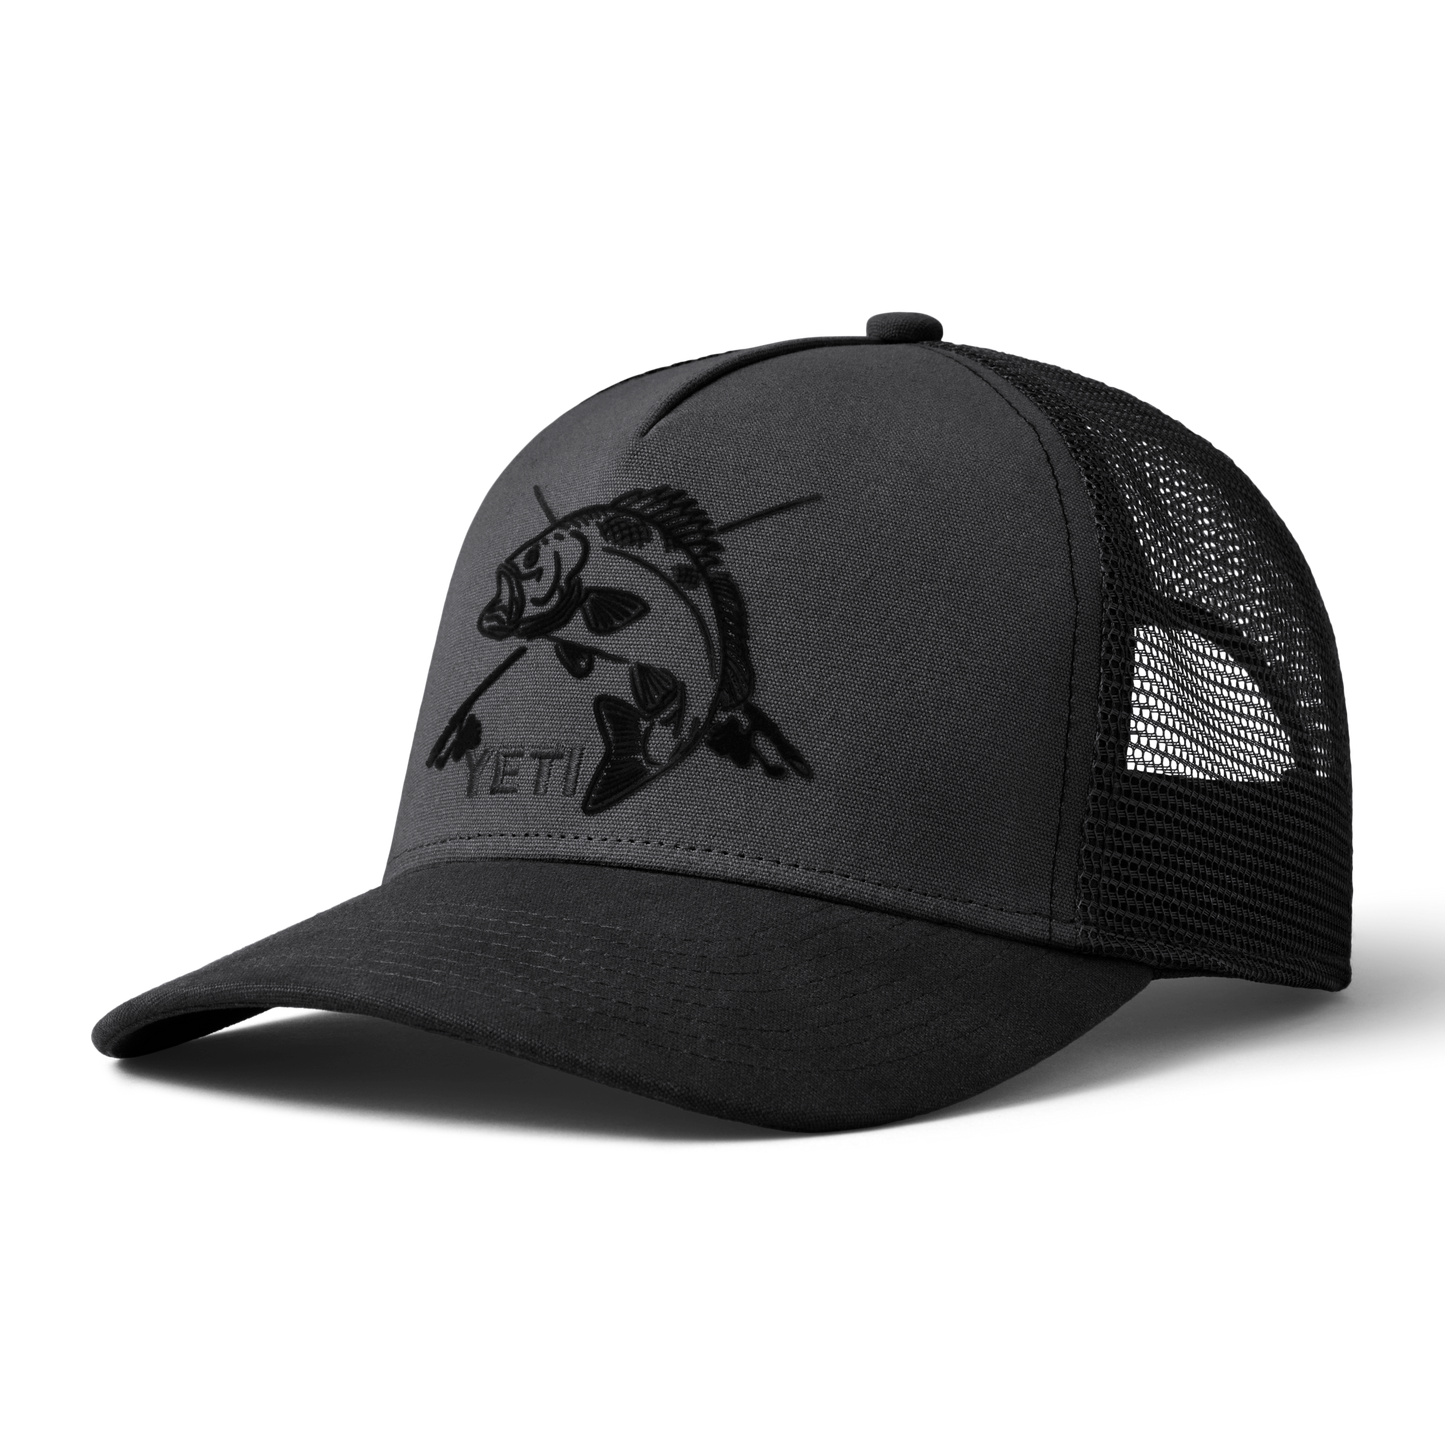 YETI Fishing Bass Trucker Hat Dark Grey/Black